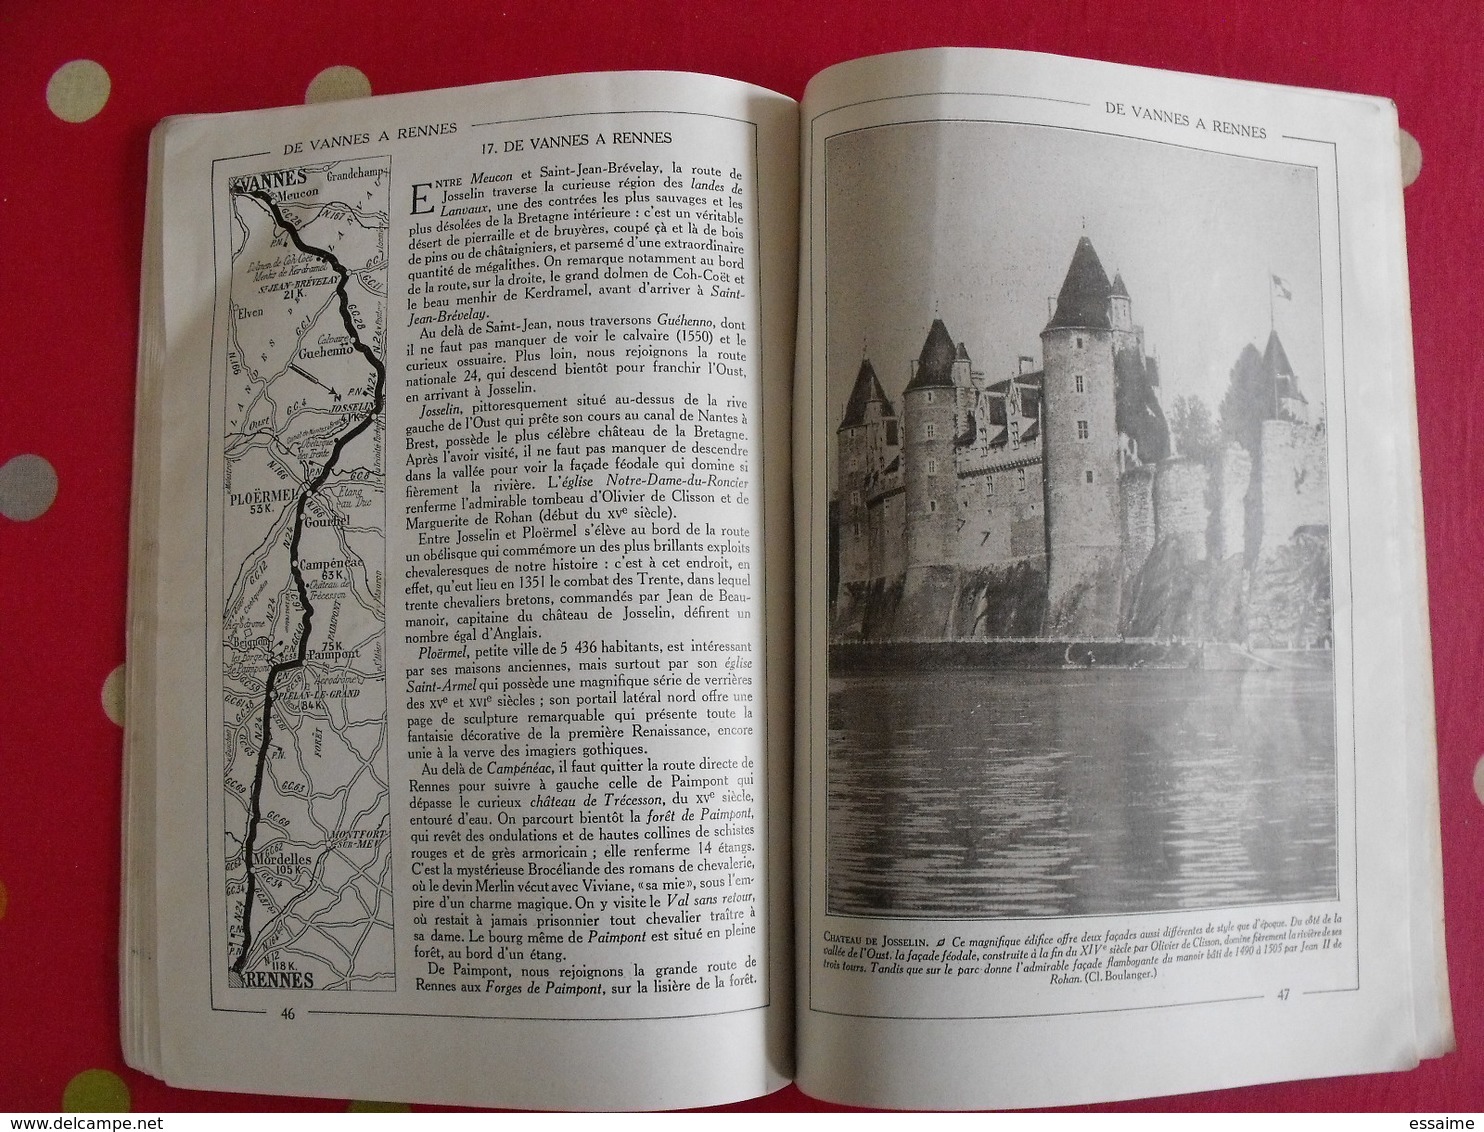 Les routes de Bretagne. Hachette 1930. bien illustré de photos